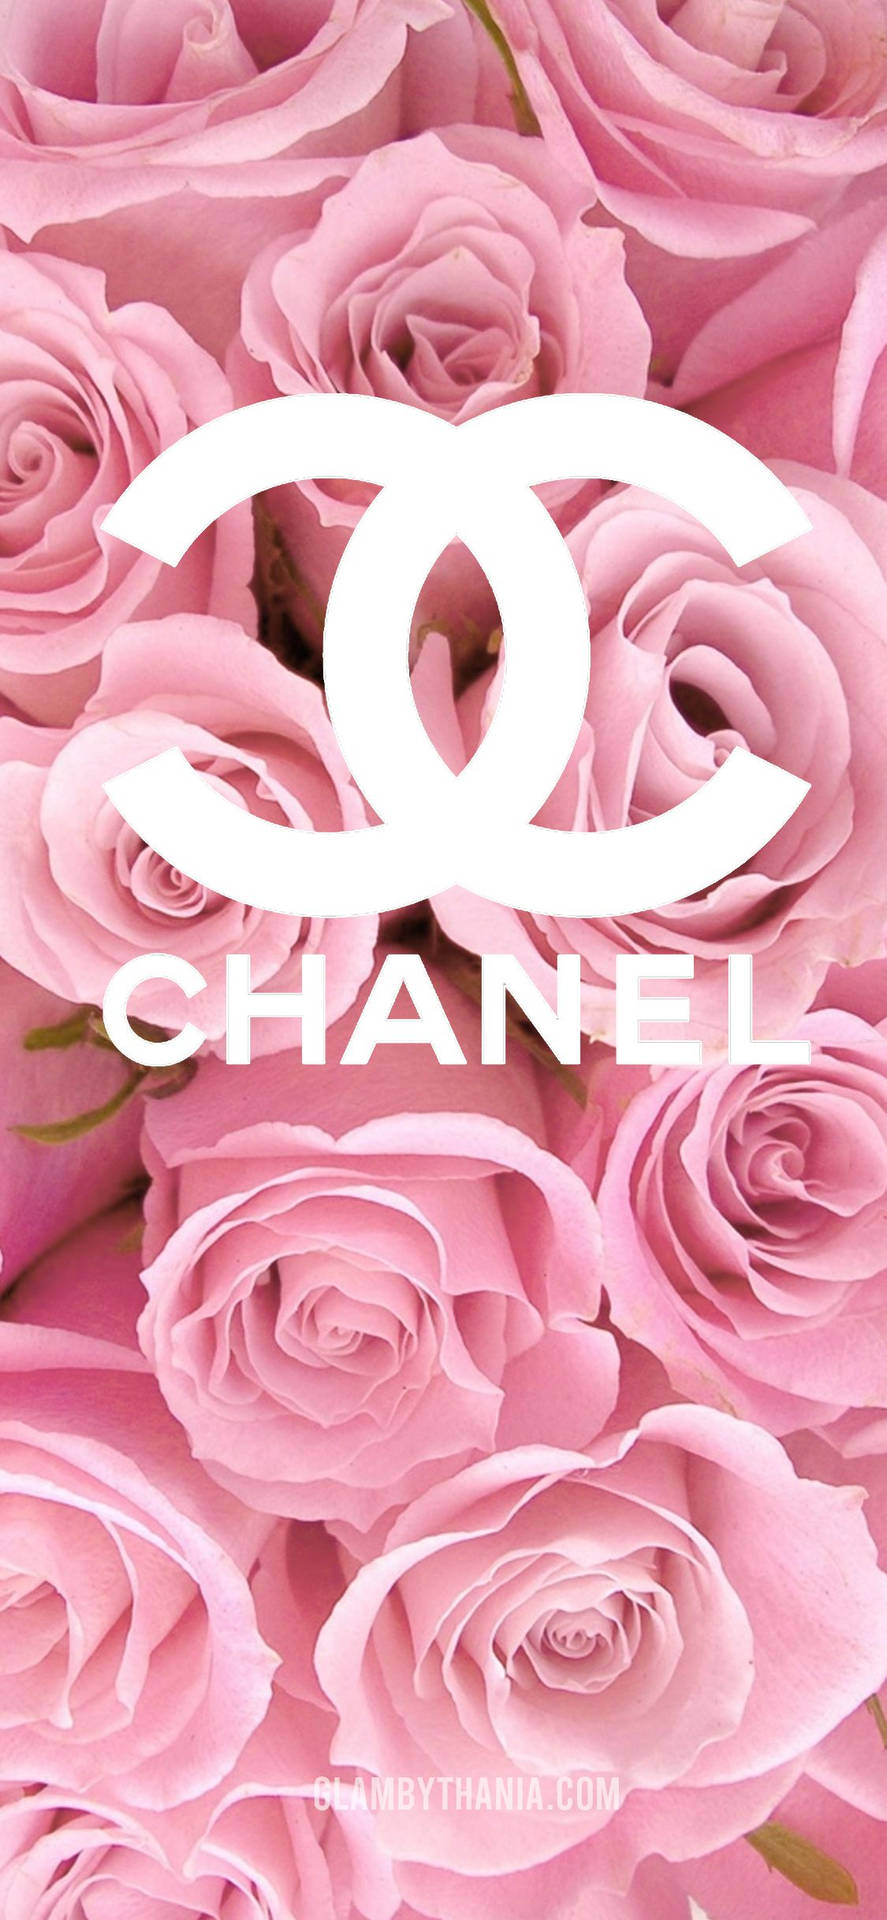 Enrosa Version Av En Av Världens Mest Ikoniska Modedesigners Logotyper, Chanel-logotypen. Wallpaper